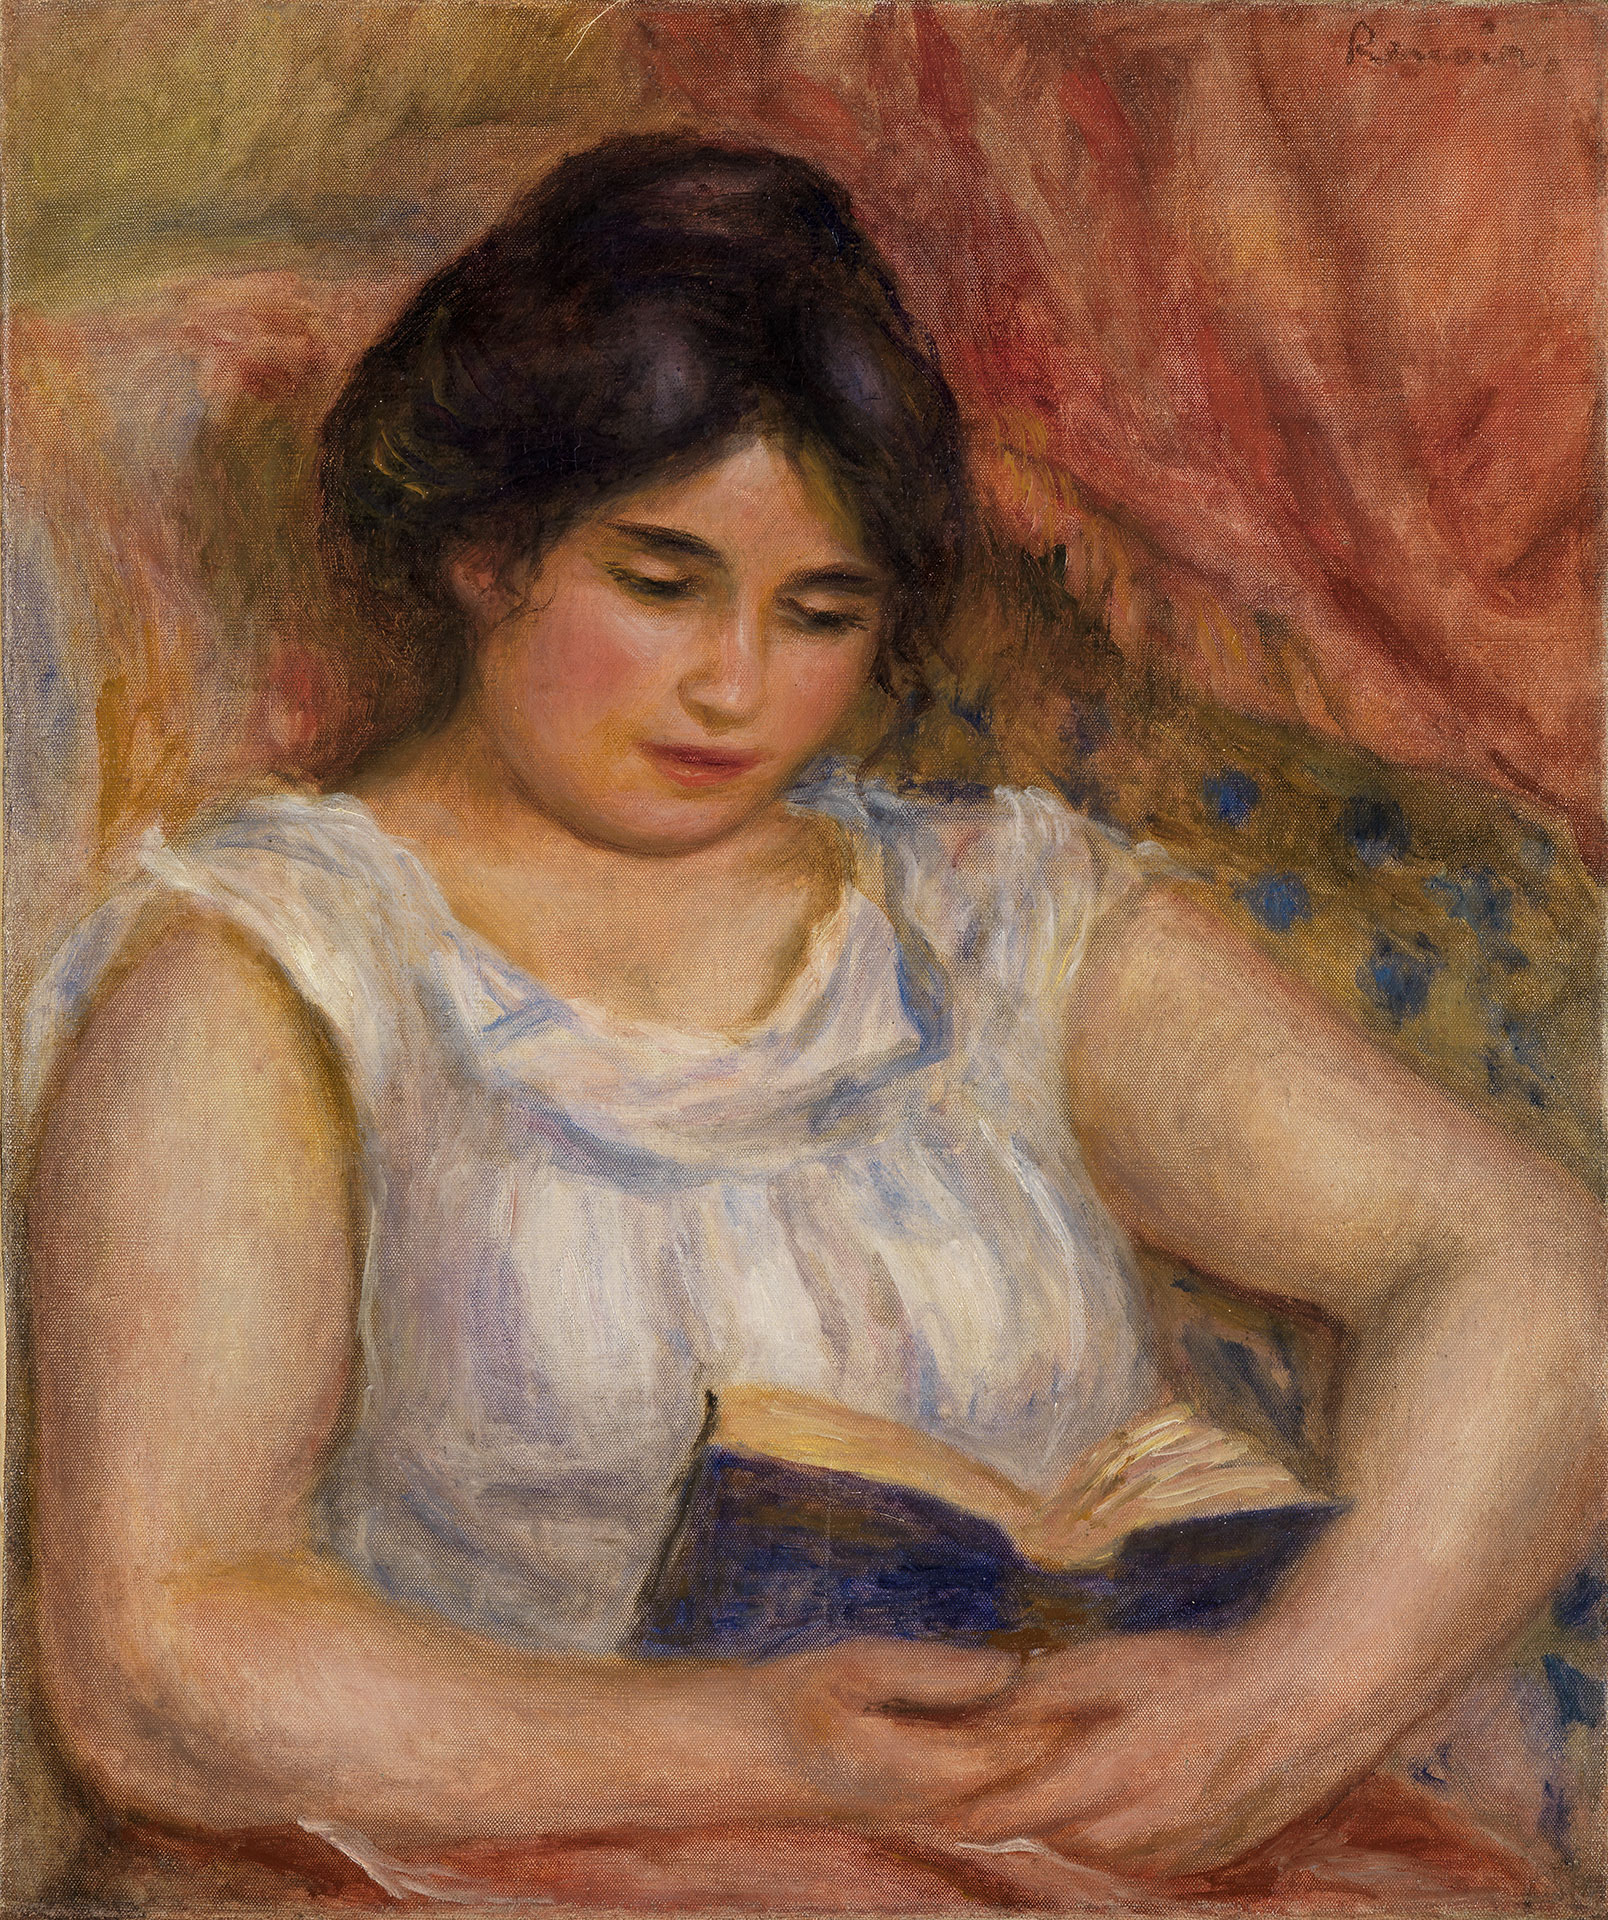 Gemälde von Auguste Renoir "Gabrielle bei der Lektüre" entstanden 1906. Es zeigt eine Frau im Sessel, die entspannt ein Buch liest.